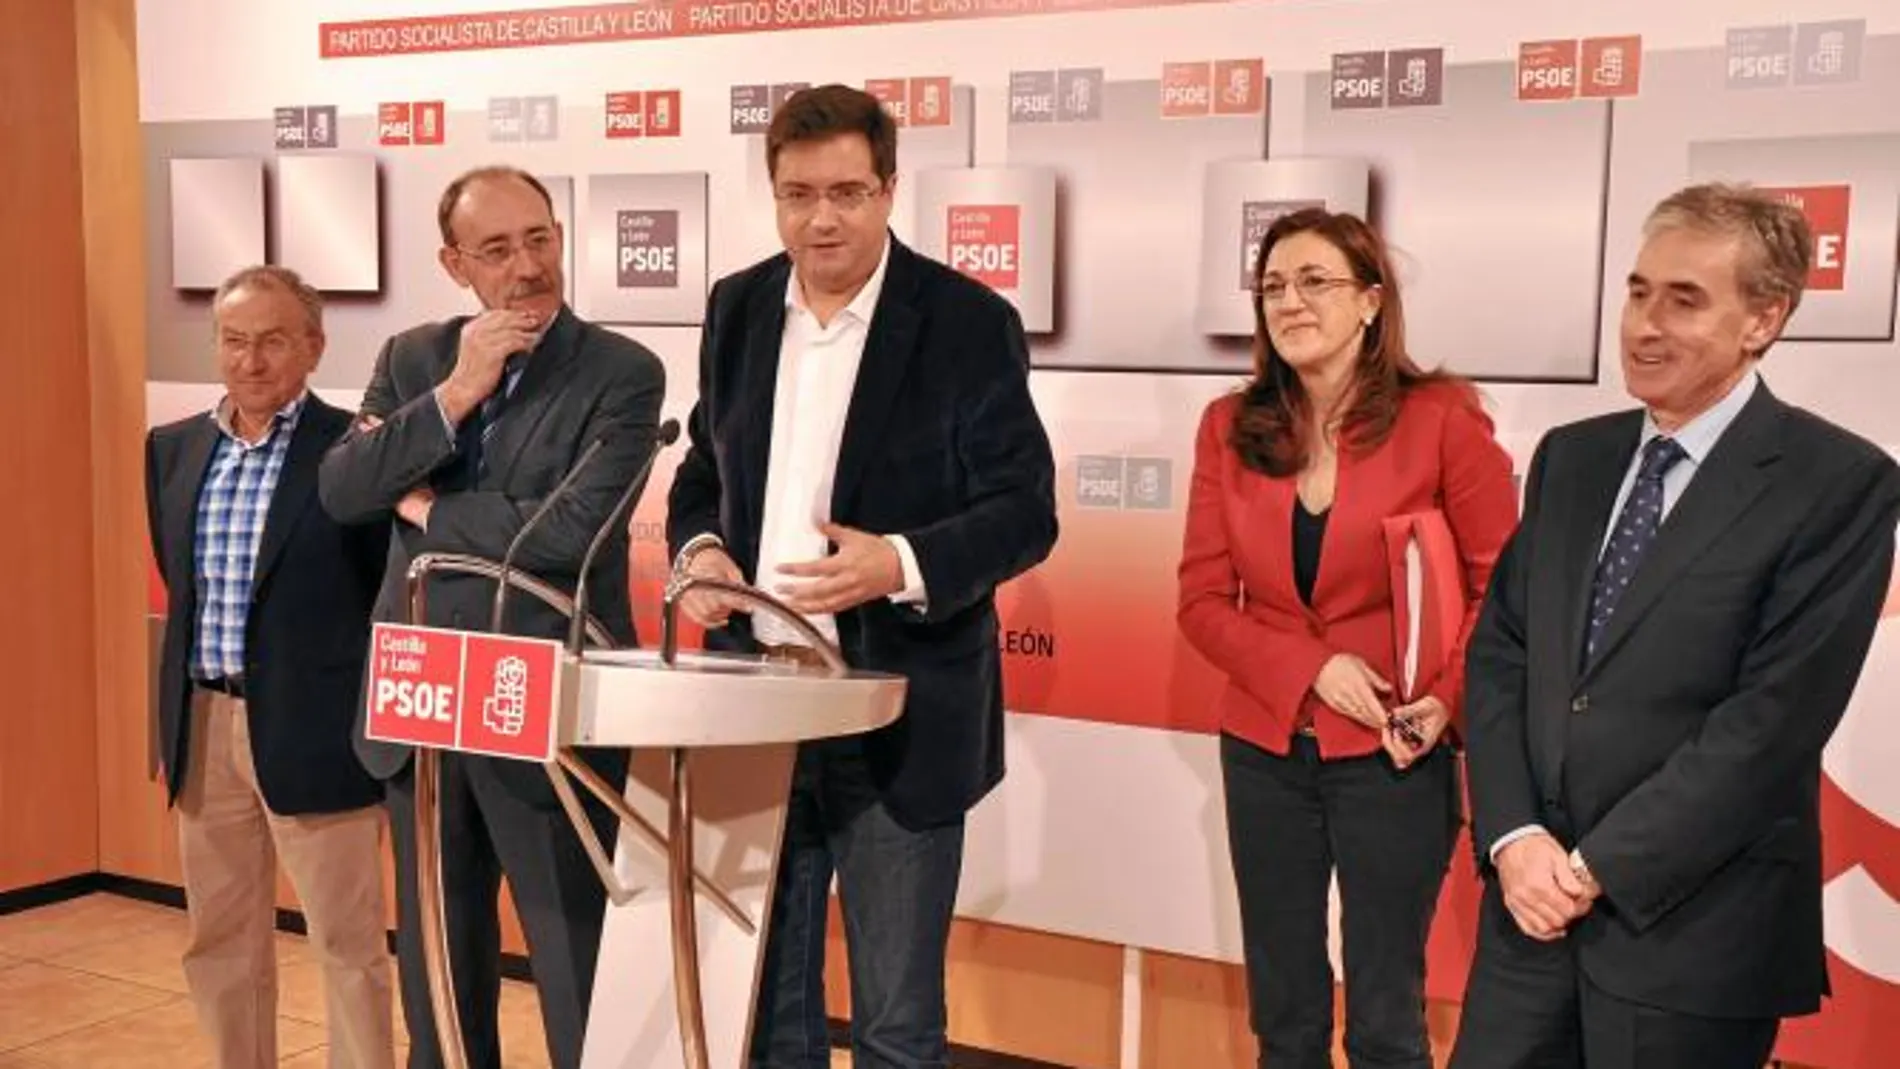 Óscar López comparece ante la prensa junto a Emilio Ávarez, Mario Bedera, Soraya Rodríguez y Jáuregui